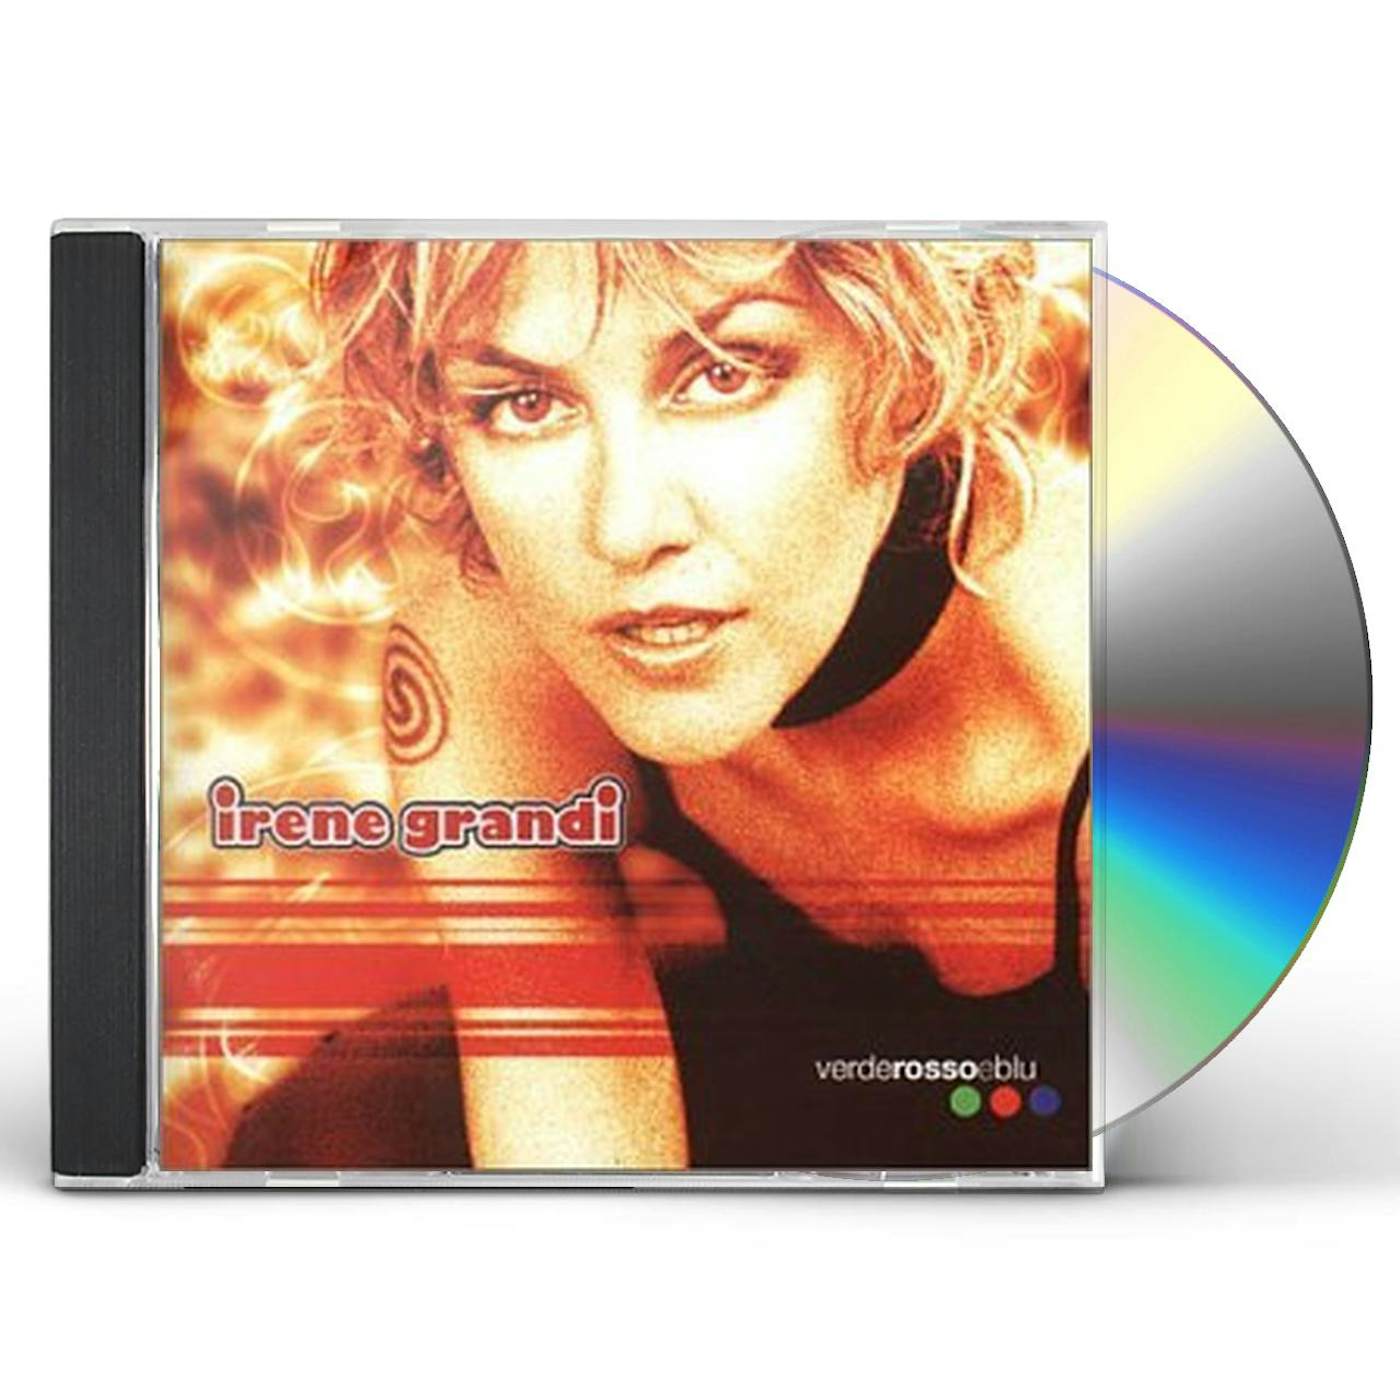 Irene Grandi VERDEROSSOEBLU CD